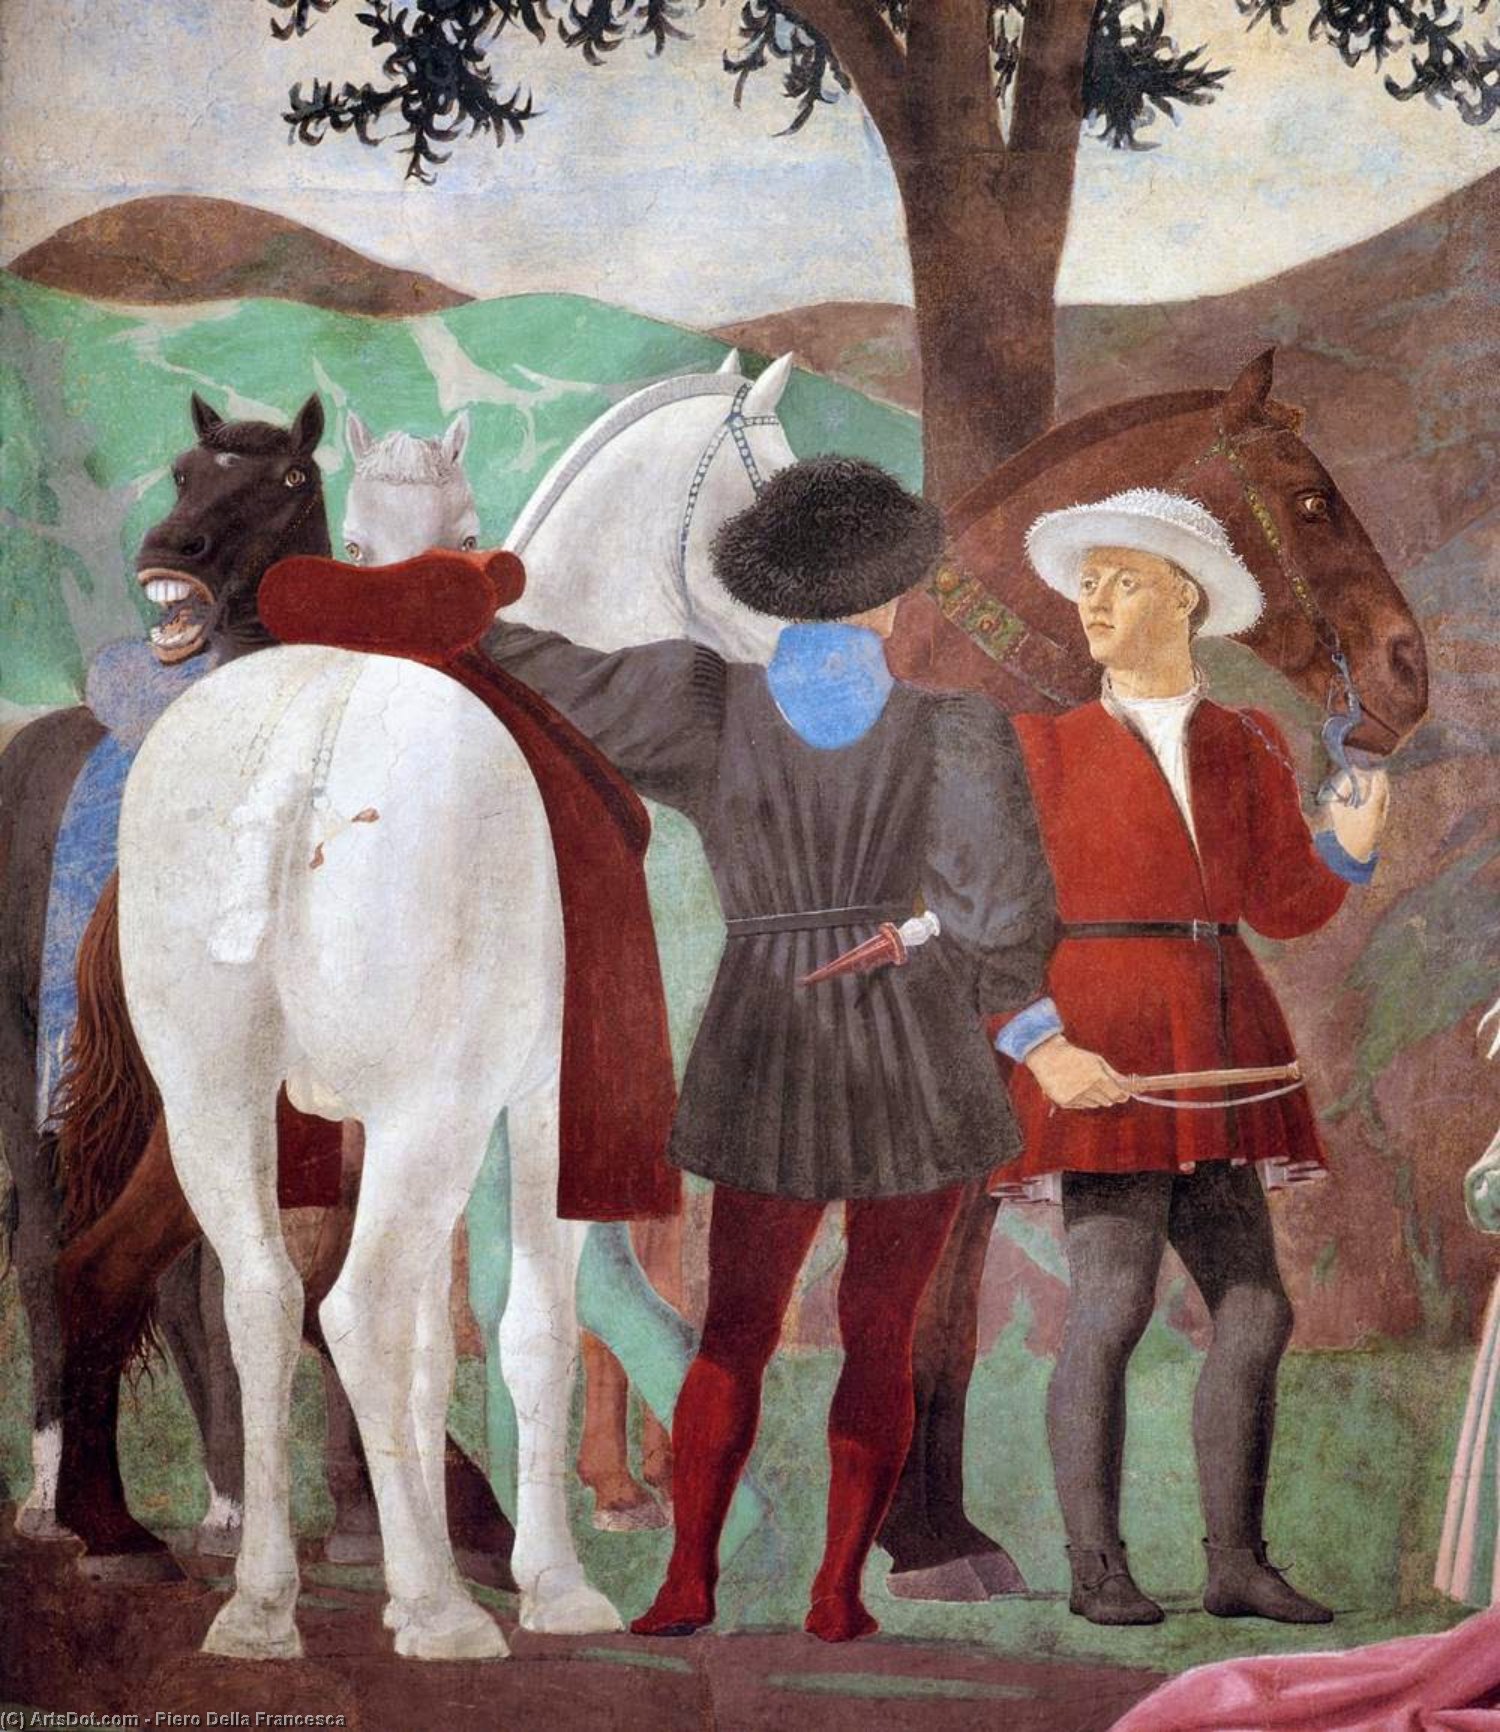 WikiOO.org - אנציקלופדיה לאמנויות יפות - ציור, יצירות אמנות Piero Della Francesca - 2a. Procession of the Queen of Sheba (detail) (13)